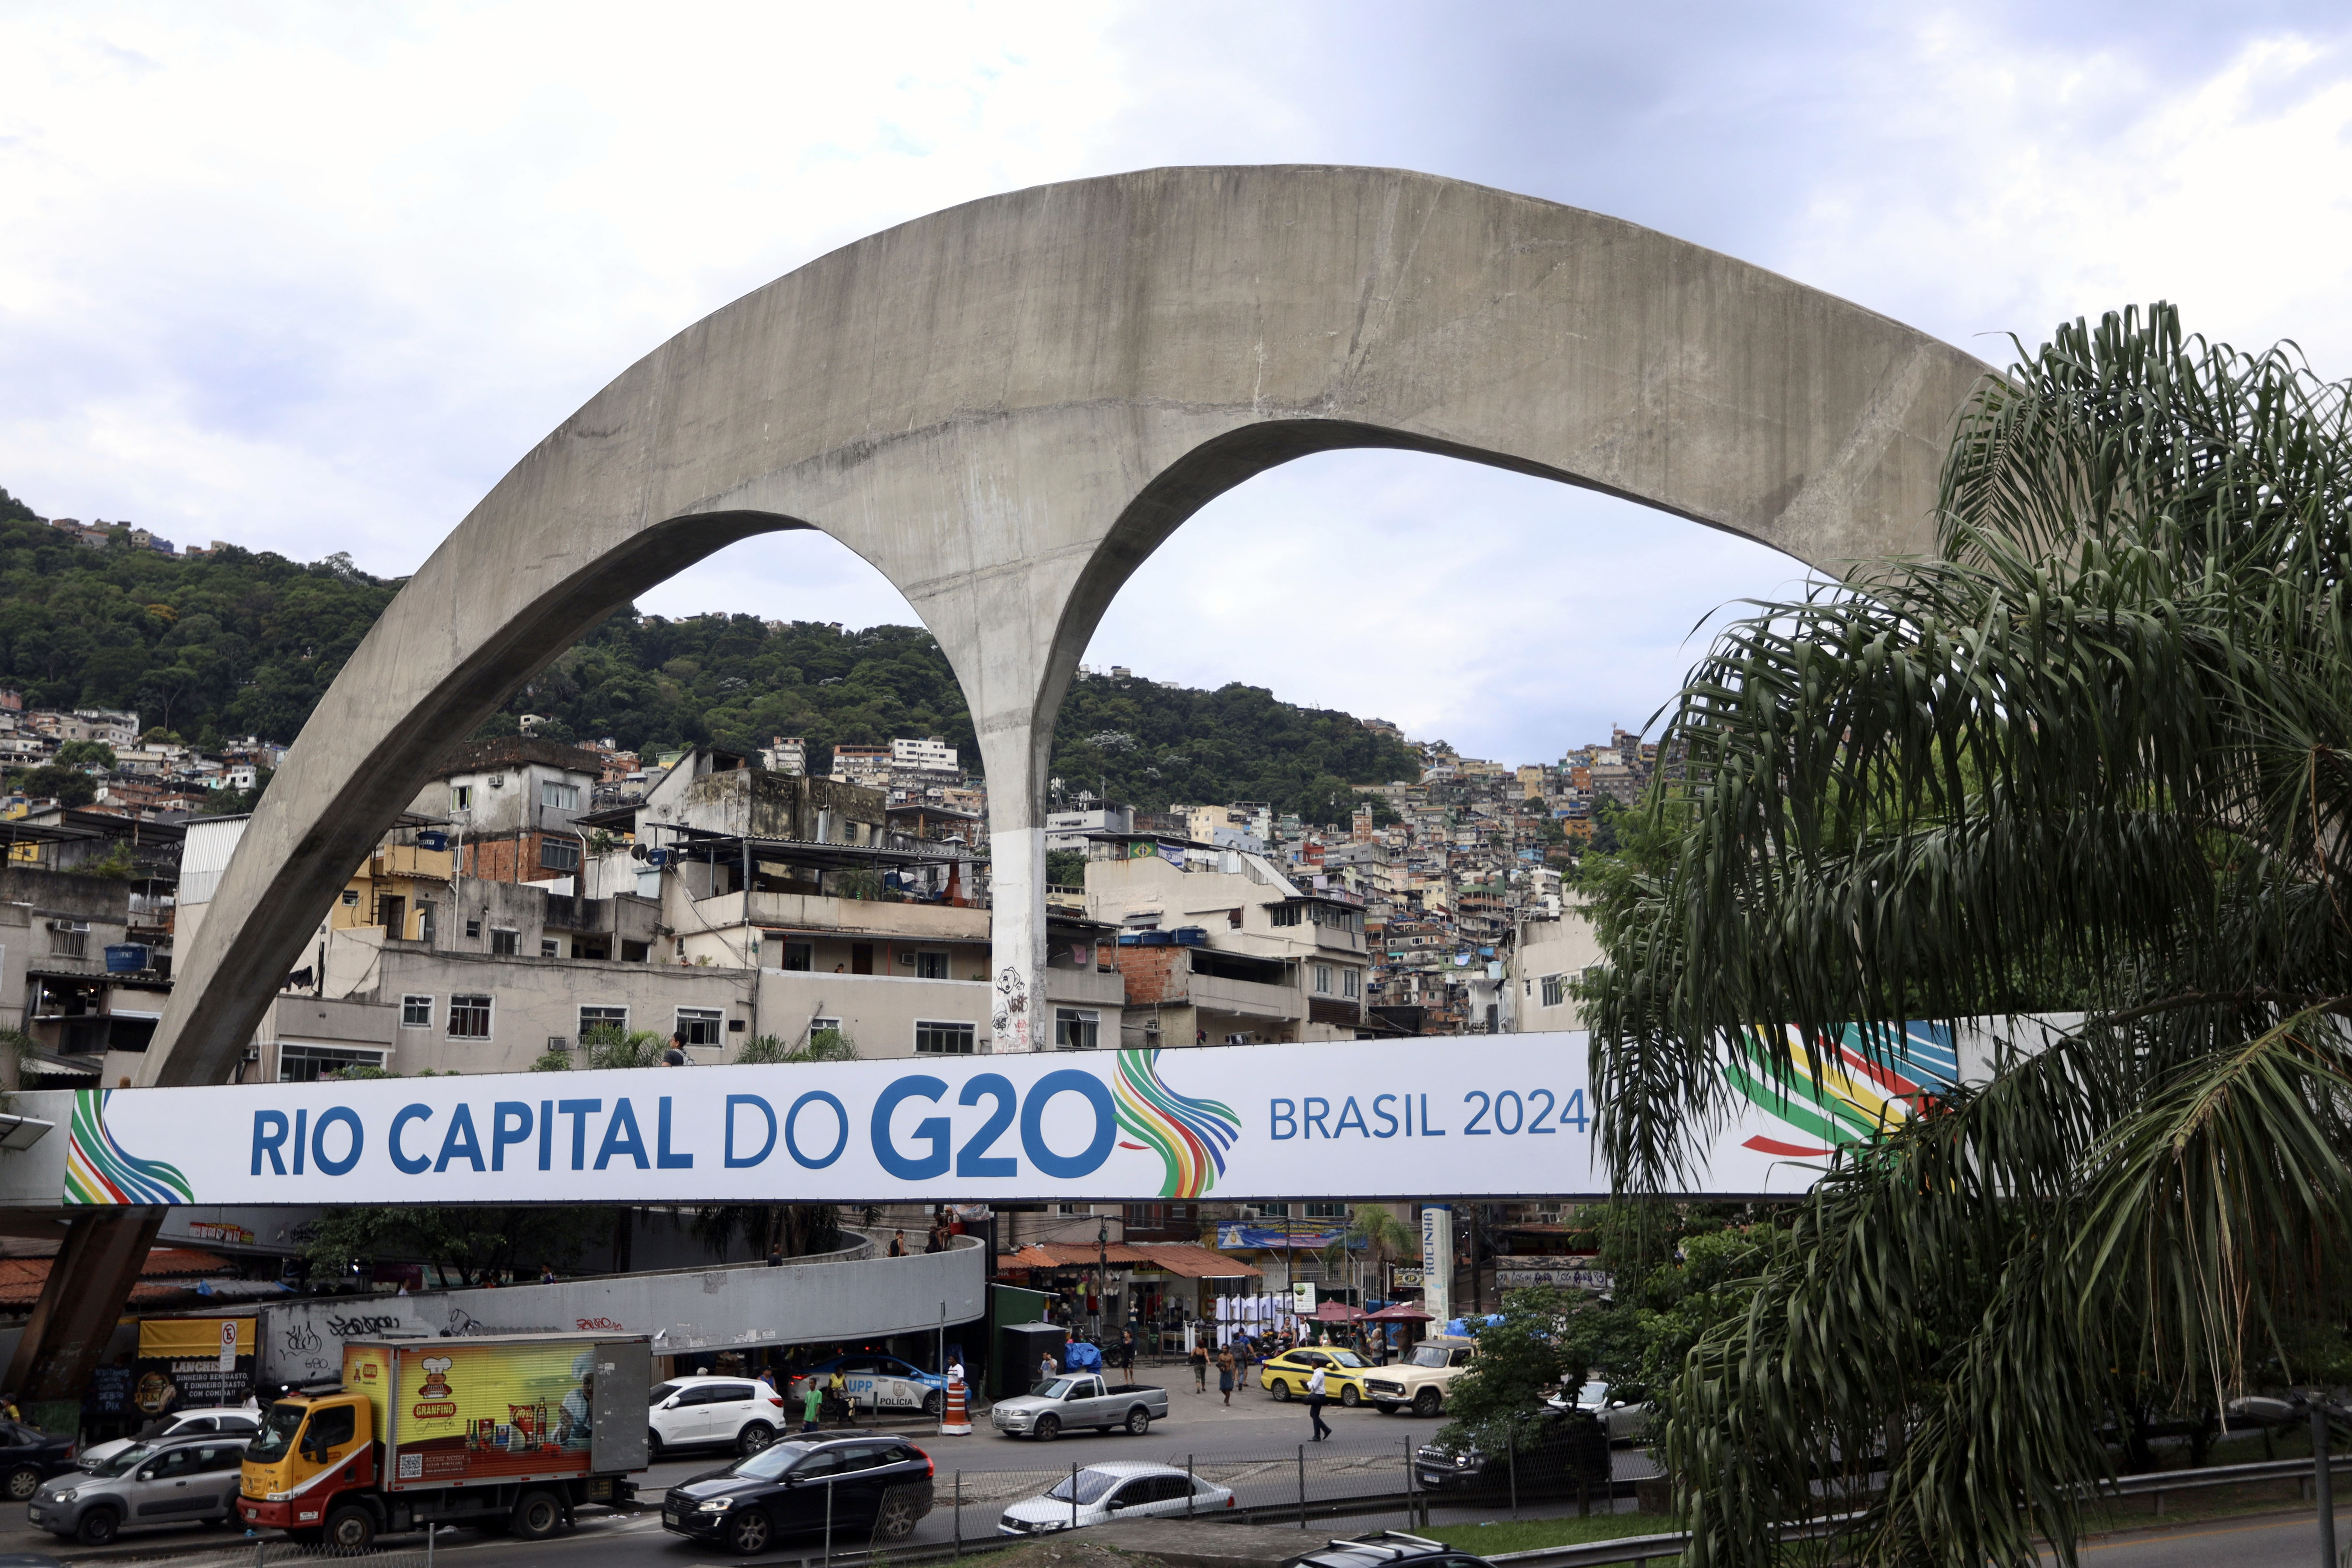 São diversos lugares na cidade que agora contam com banners para o G20, a exemplo da entrada da favela da Rocinha. | Foto: Divulgação/Prefeitura Rio de Janeiro